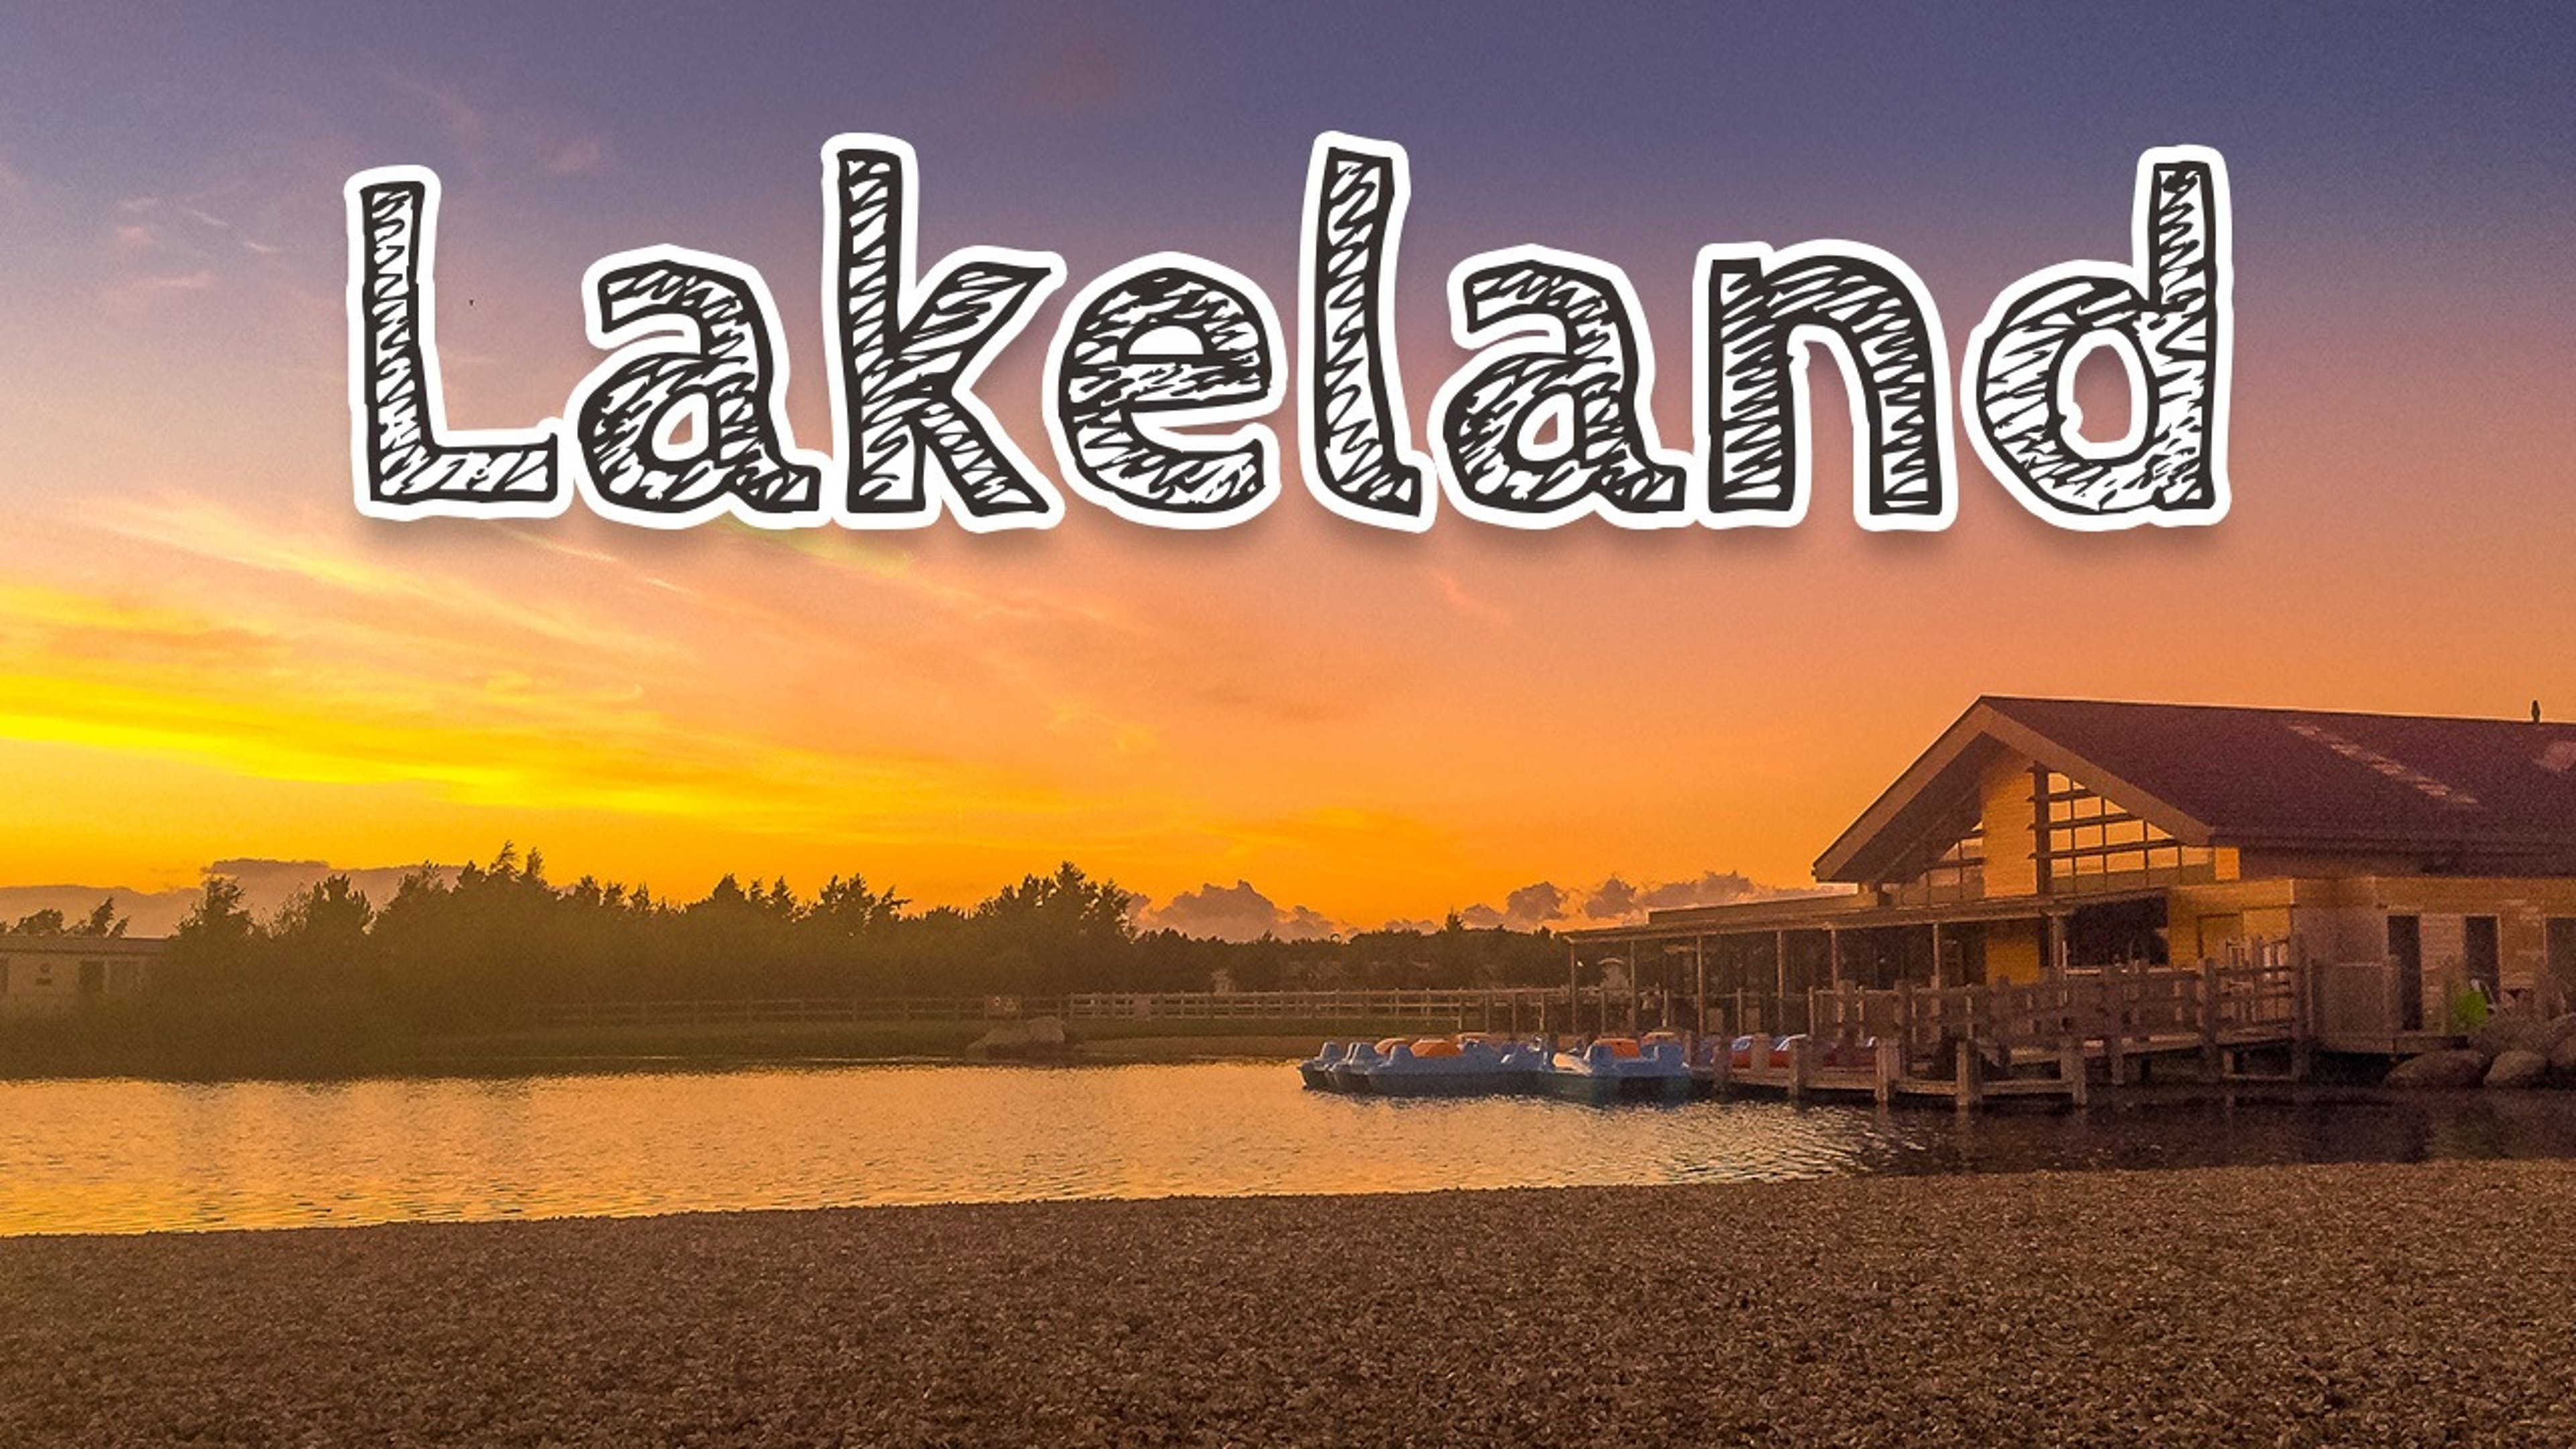 Lakeland Leisure Park